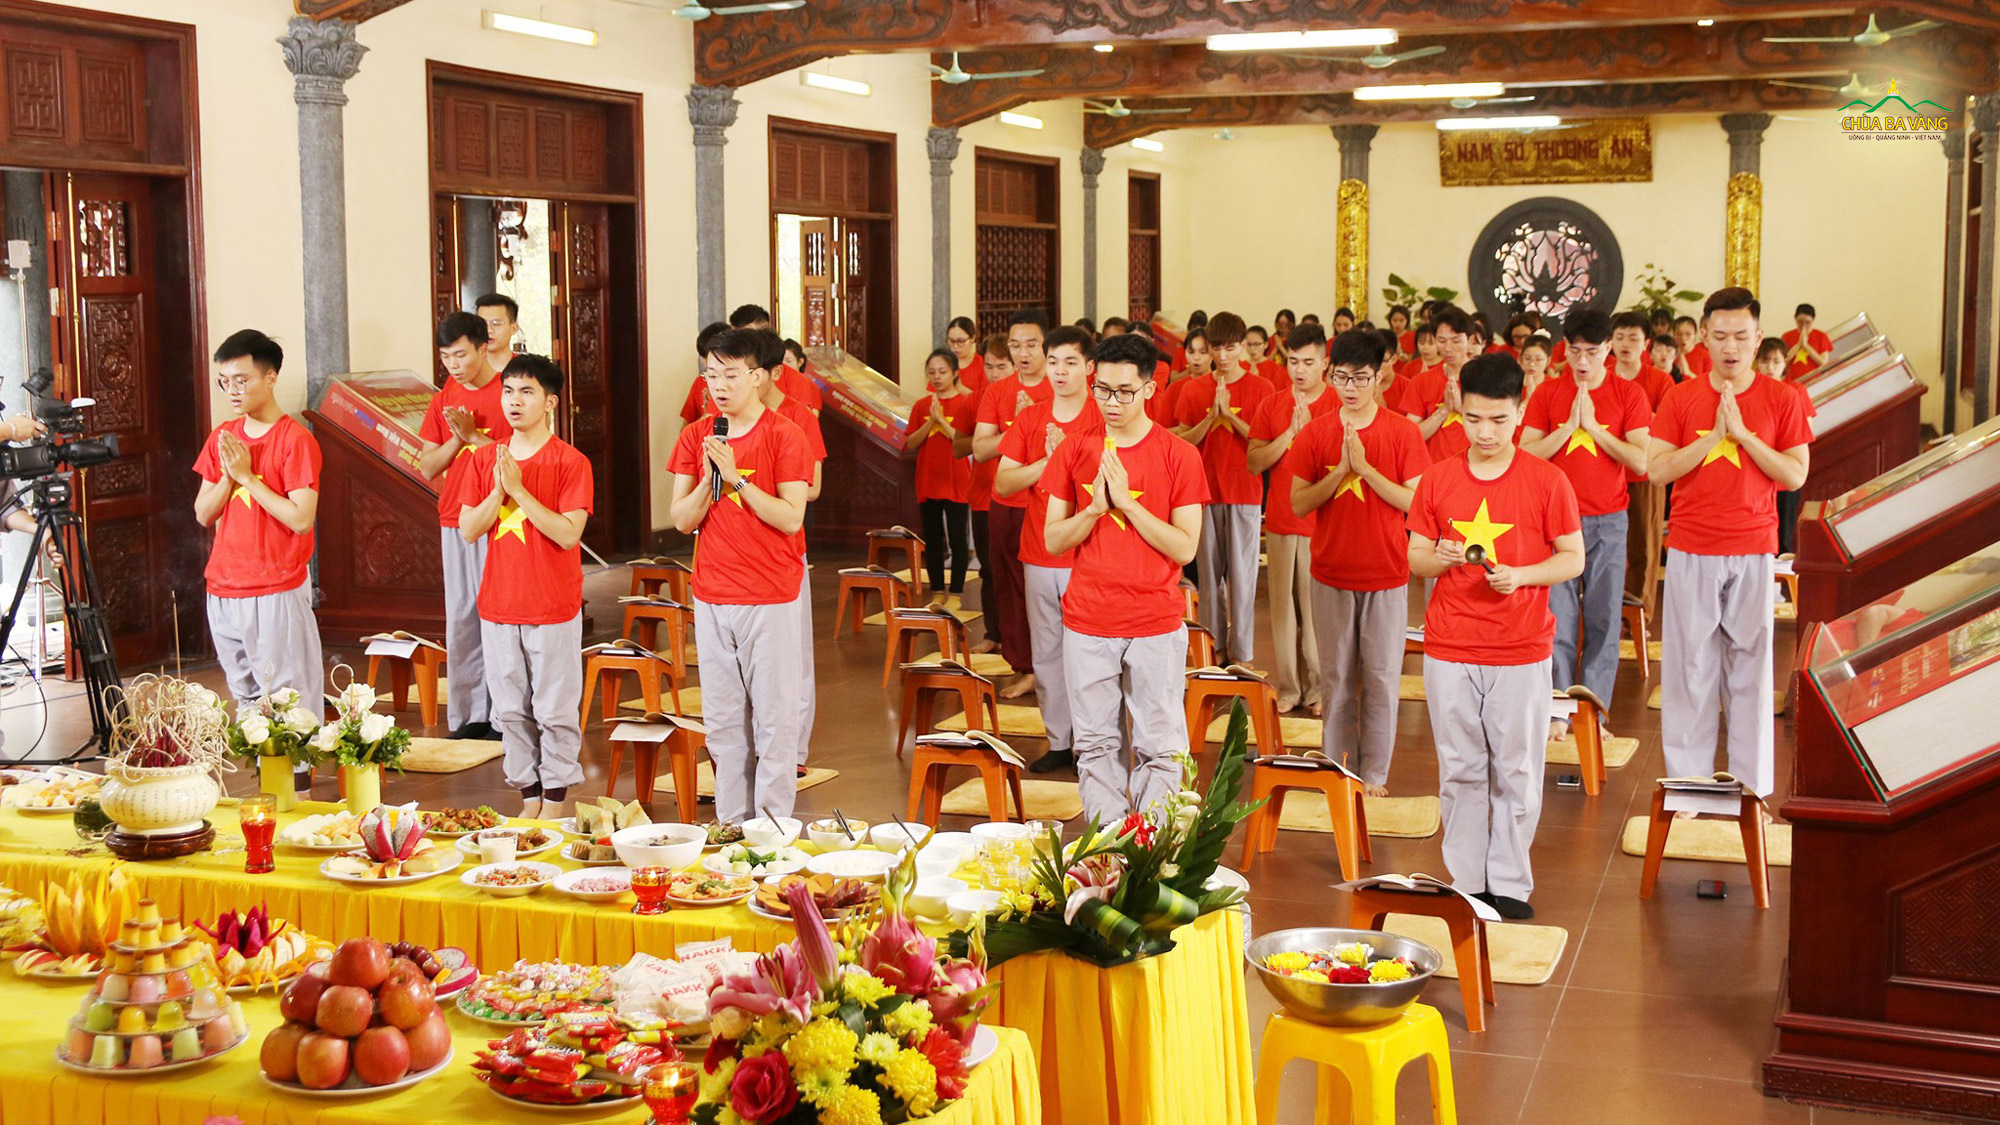 Các bạn trẻ trong CLB Tuổi trẻ Ba Vàng cùng khoác lên mình chiếc áo cờ đỏ sao vàng để tham gia tụng kinh cầu siêu tại đền thờ liệt sĩ chùa Ba Vàng